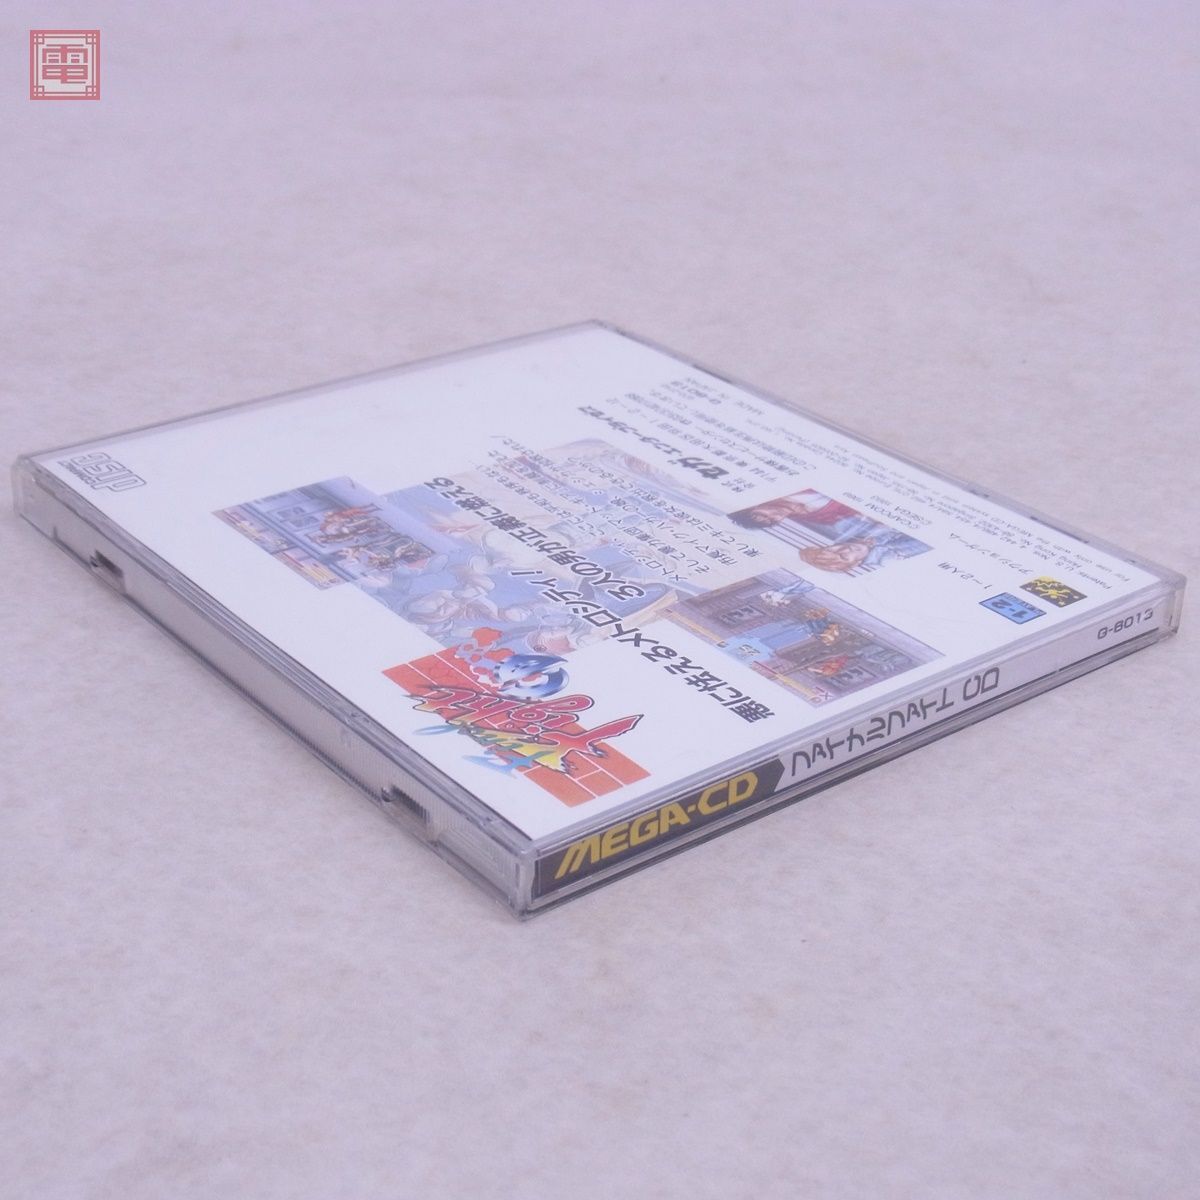  operation guarantee goods MD mega CD final faitoCD Final Fight CD Sega SEGA box opinion with belt [10